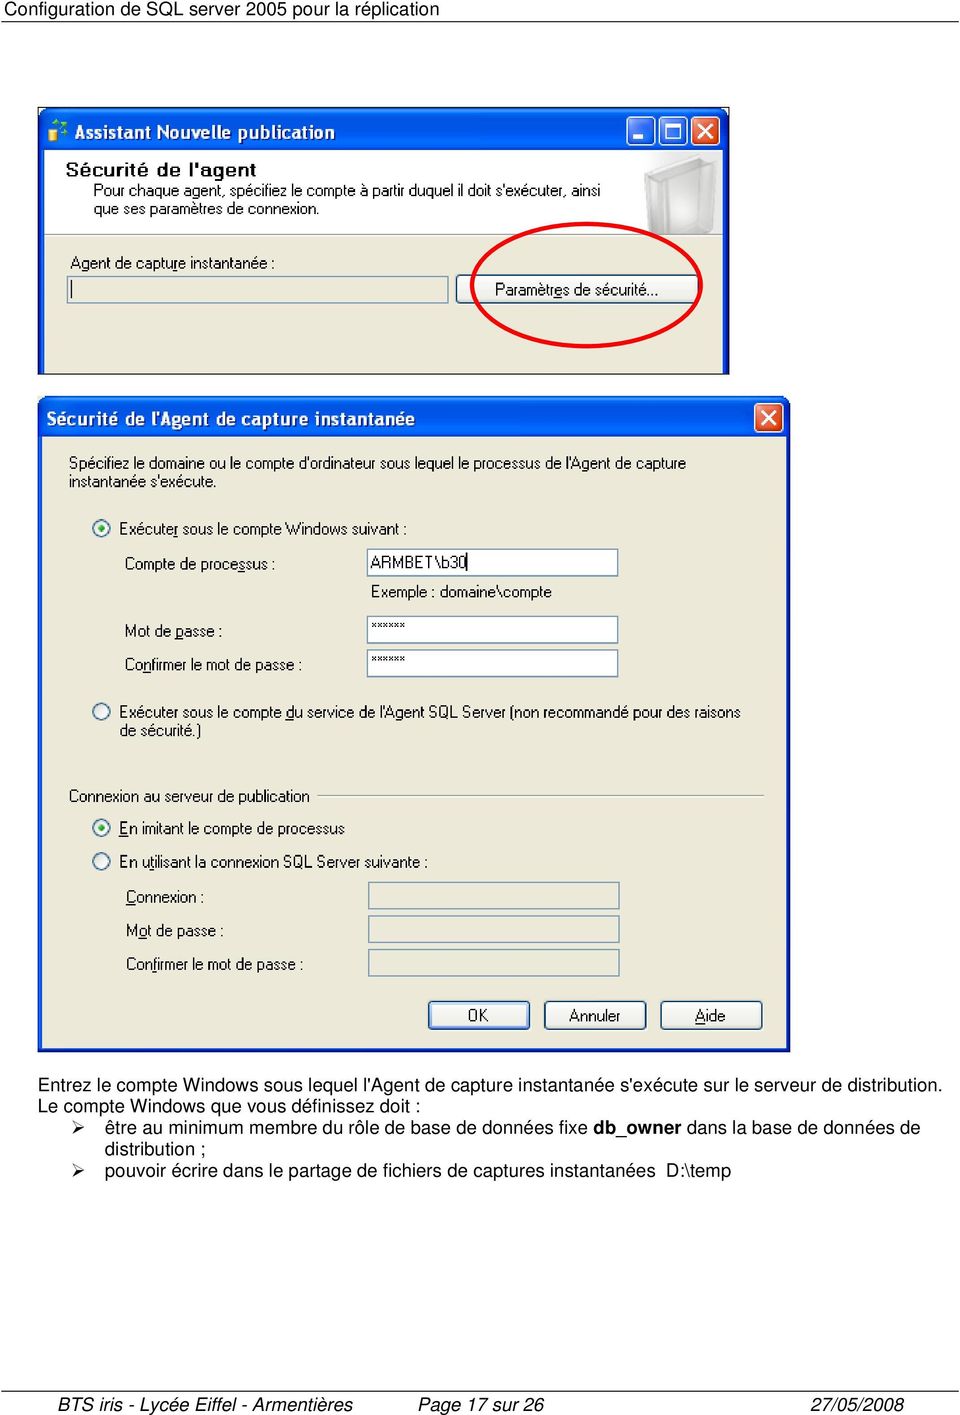 Le compte Windows que vous définissez doit : être au minimum membre du rôle de base de données fixe